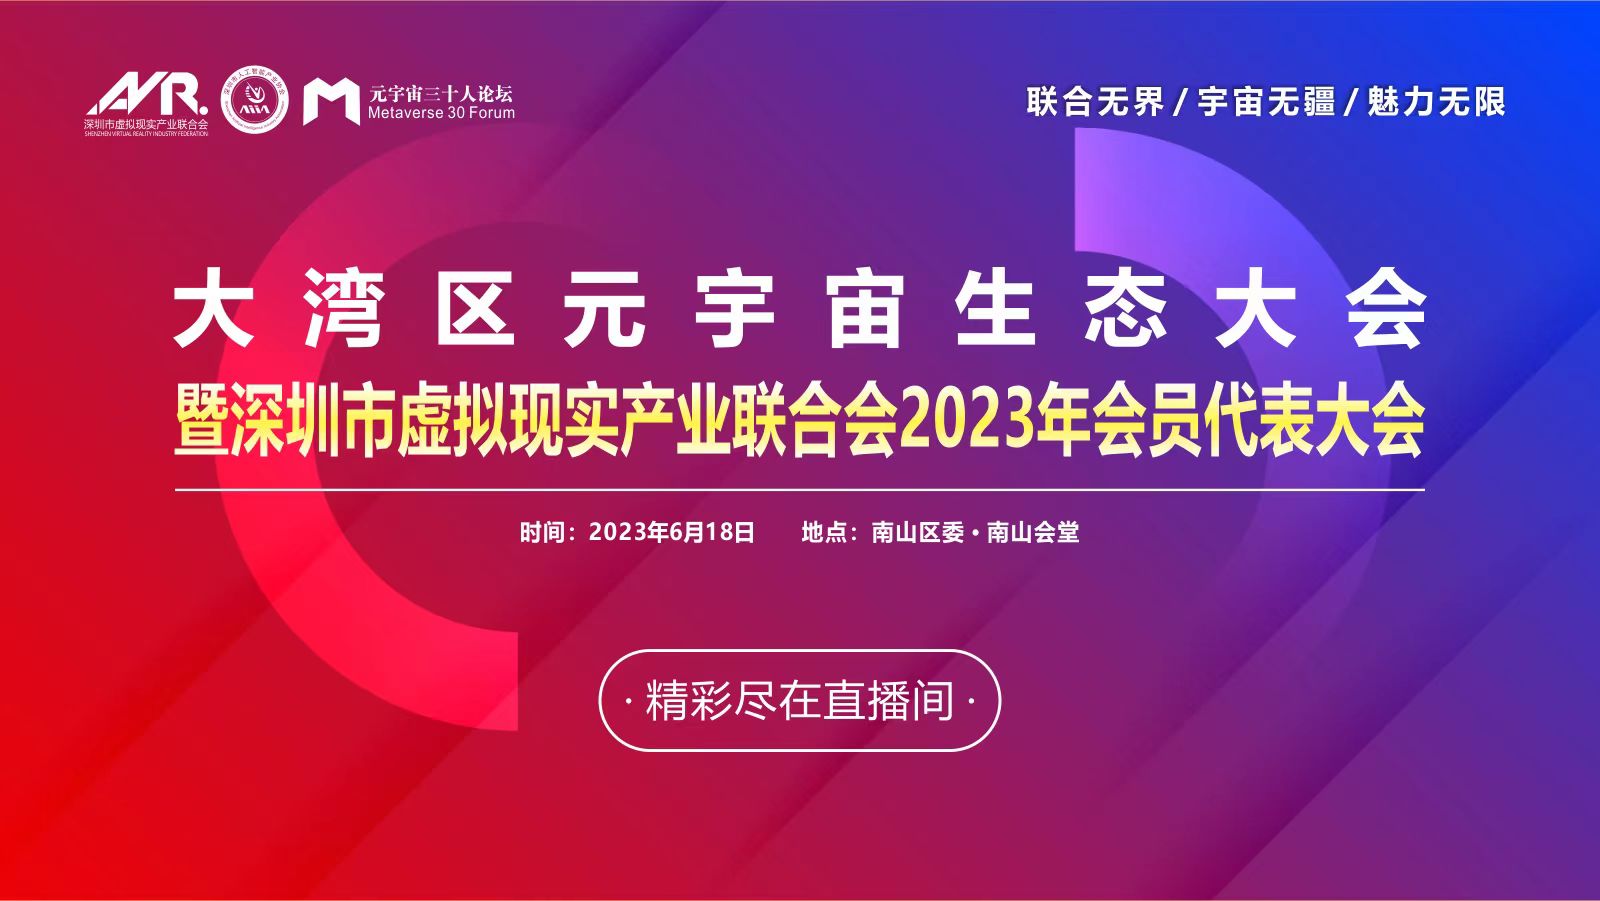 大湾区元宇宙生态大会暨深圳市虚拟现实产业联合会2023年会员代表大会